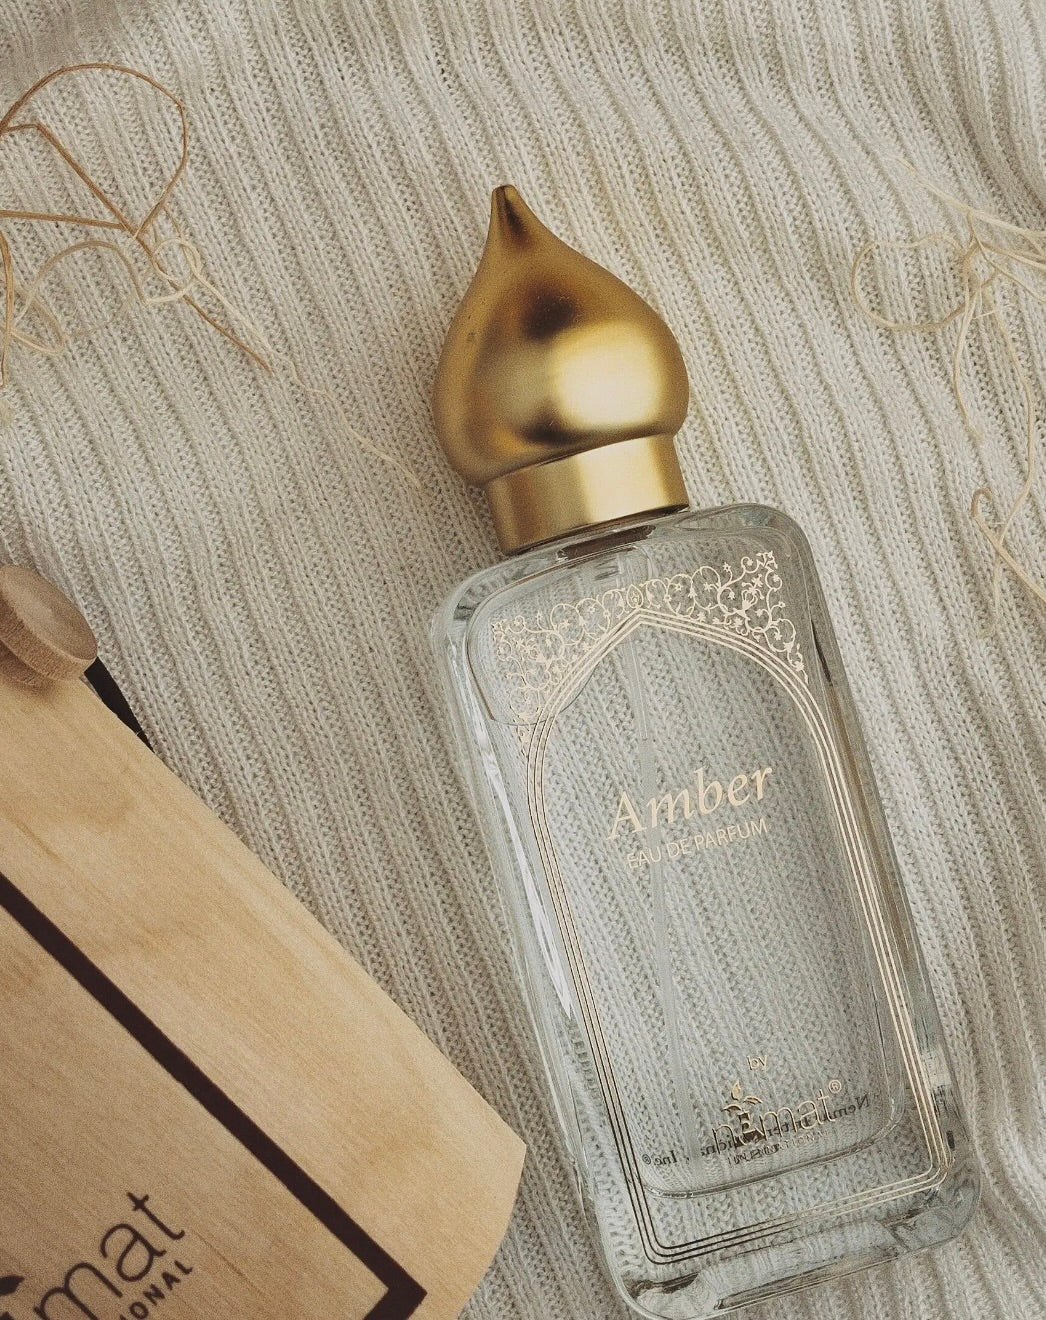 Nemat Amber Eau De Parfum 50ml – Two Blondes Boutique